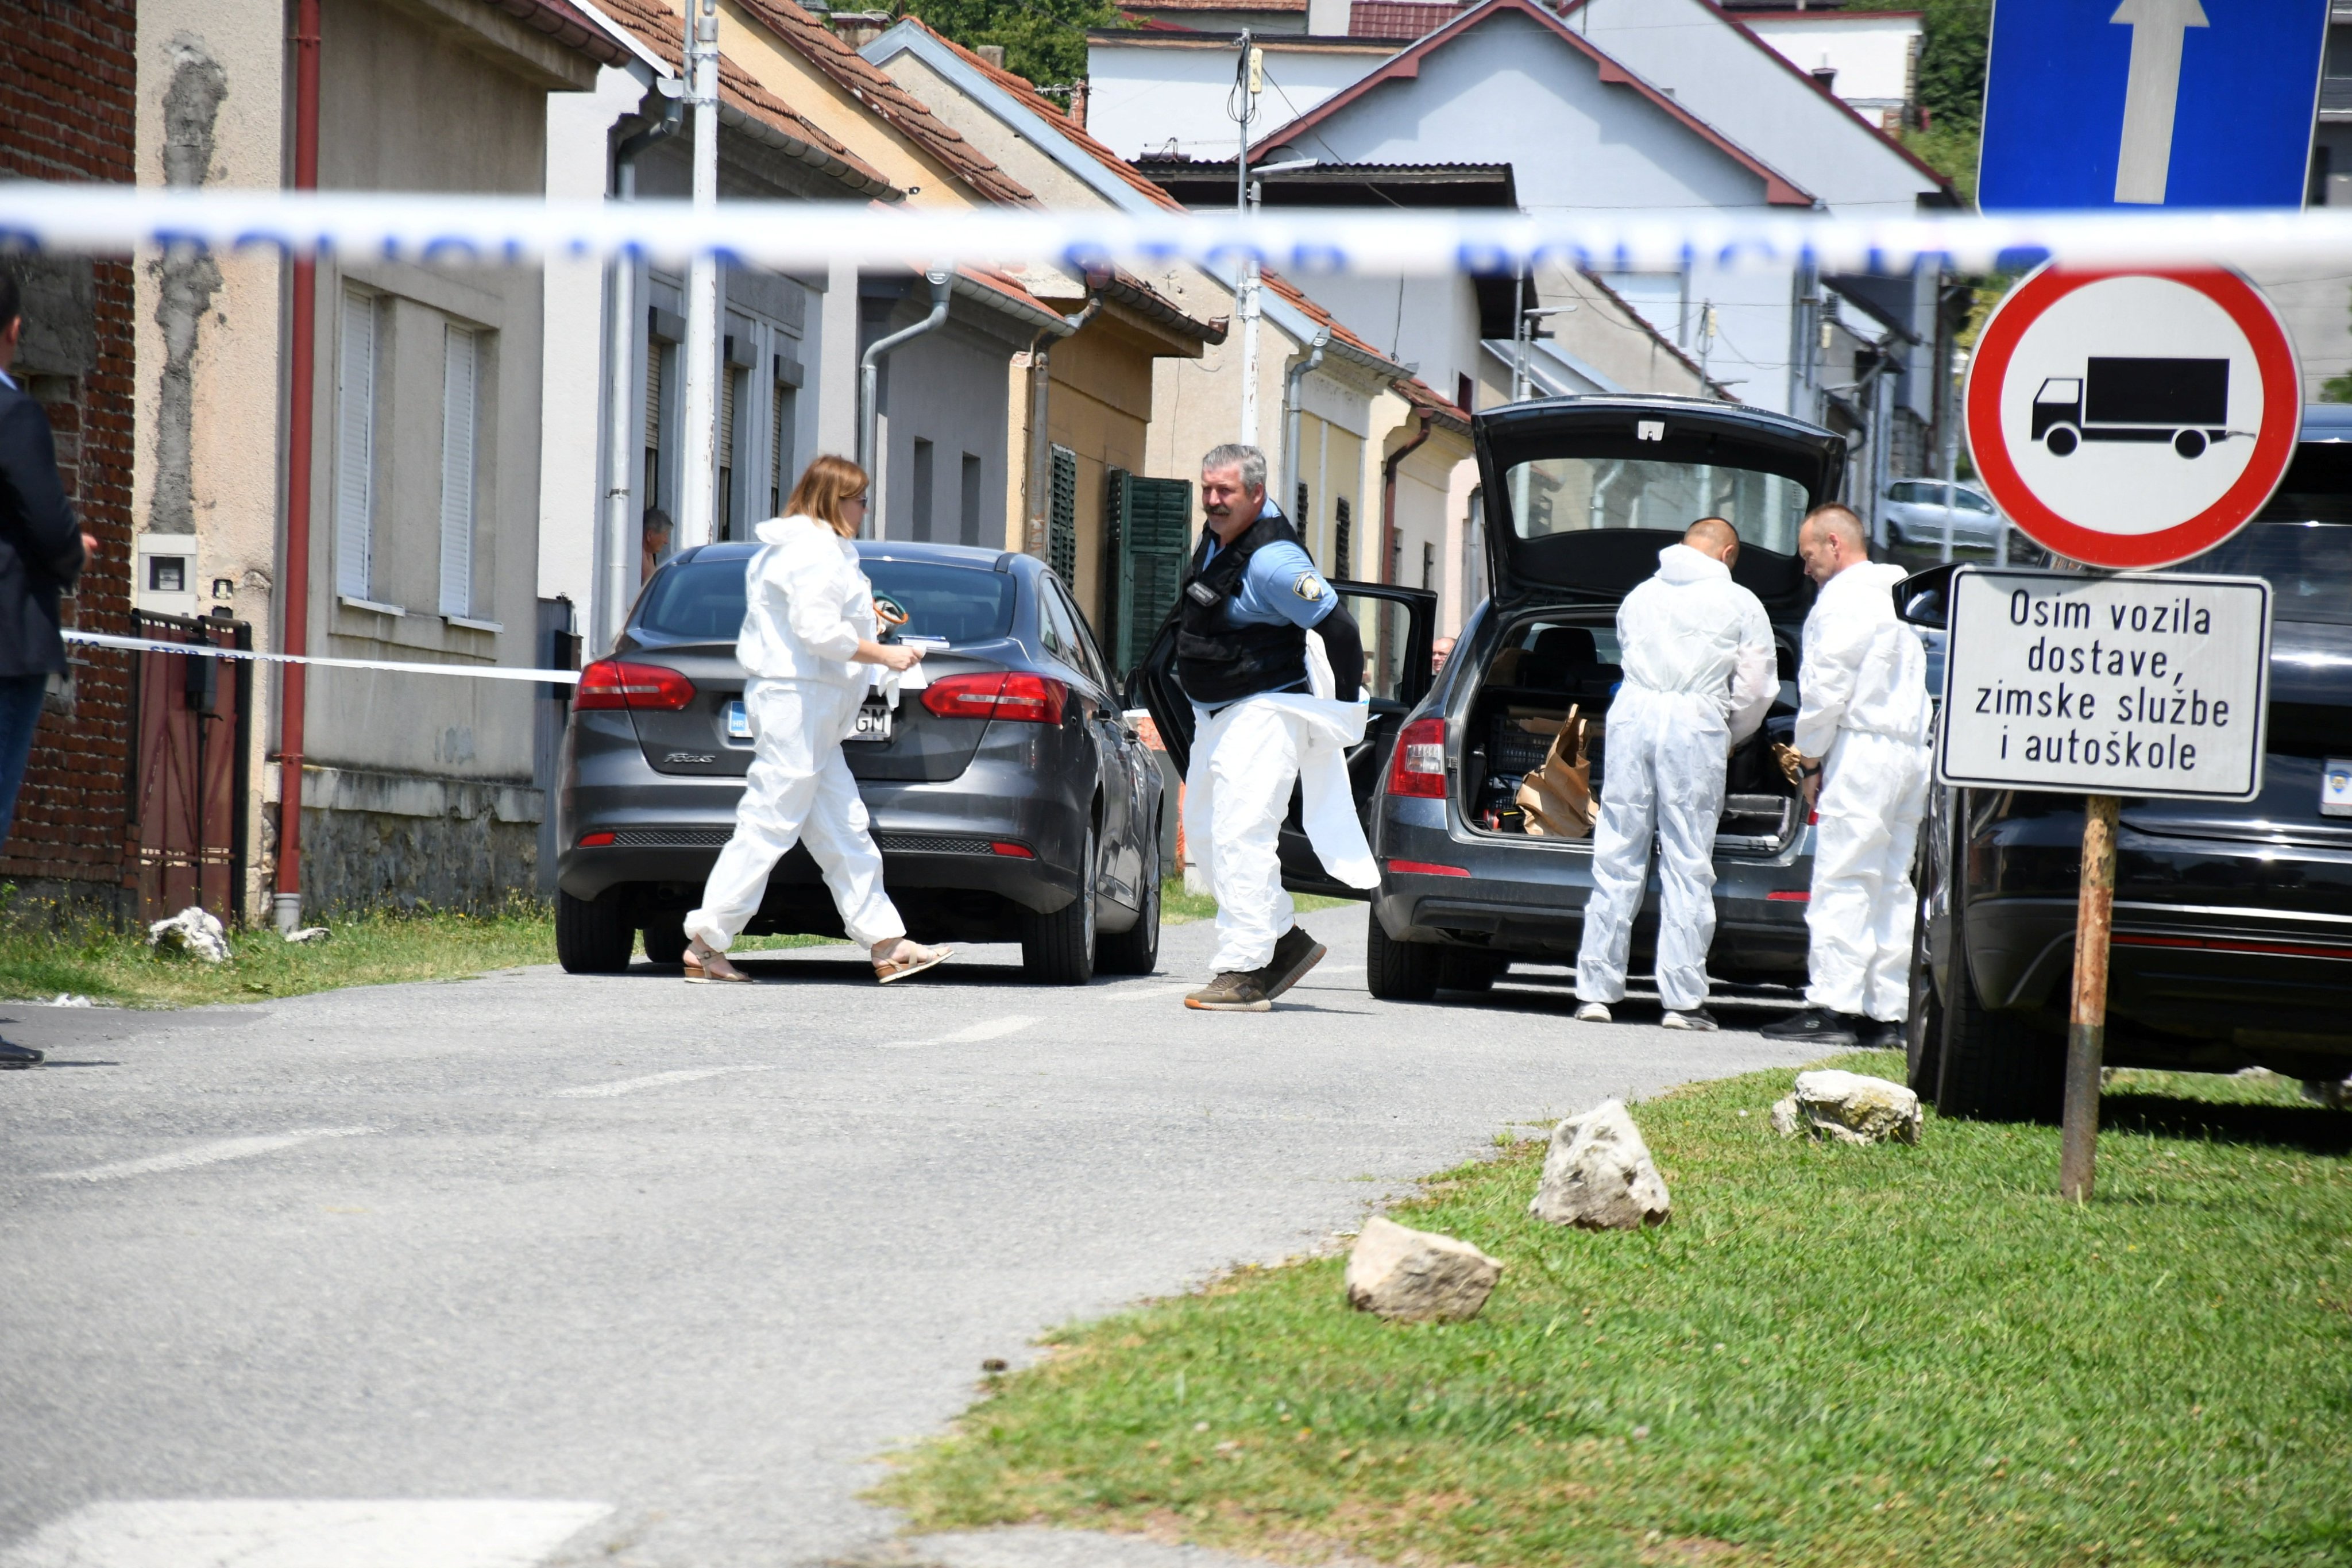 Police secure a crime scene in Daruvar, Croatia on Monday. Photo: Damir Spehar / PIXSELL / Handout via Reuters